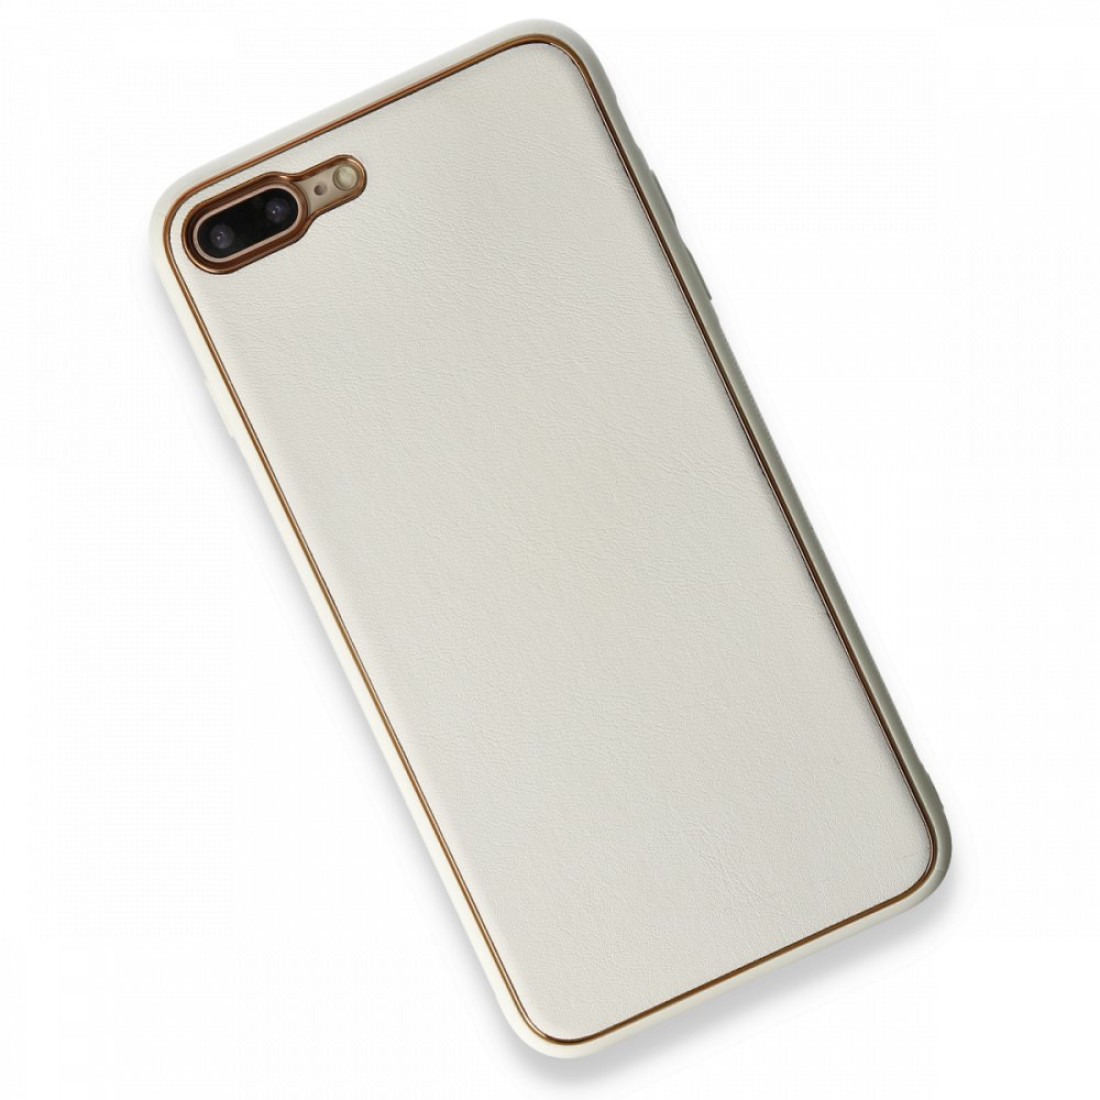 Apple iPhone 8 Plus Kılıf Coco Deri Silikon Kapak - Beyaz